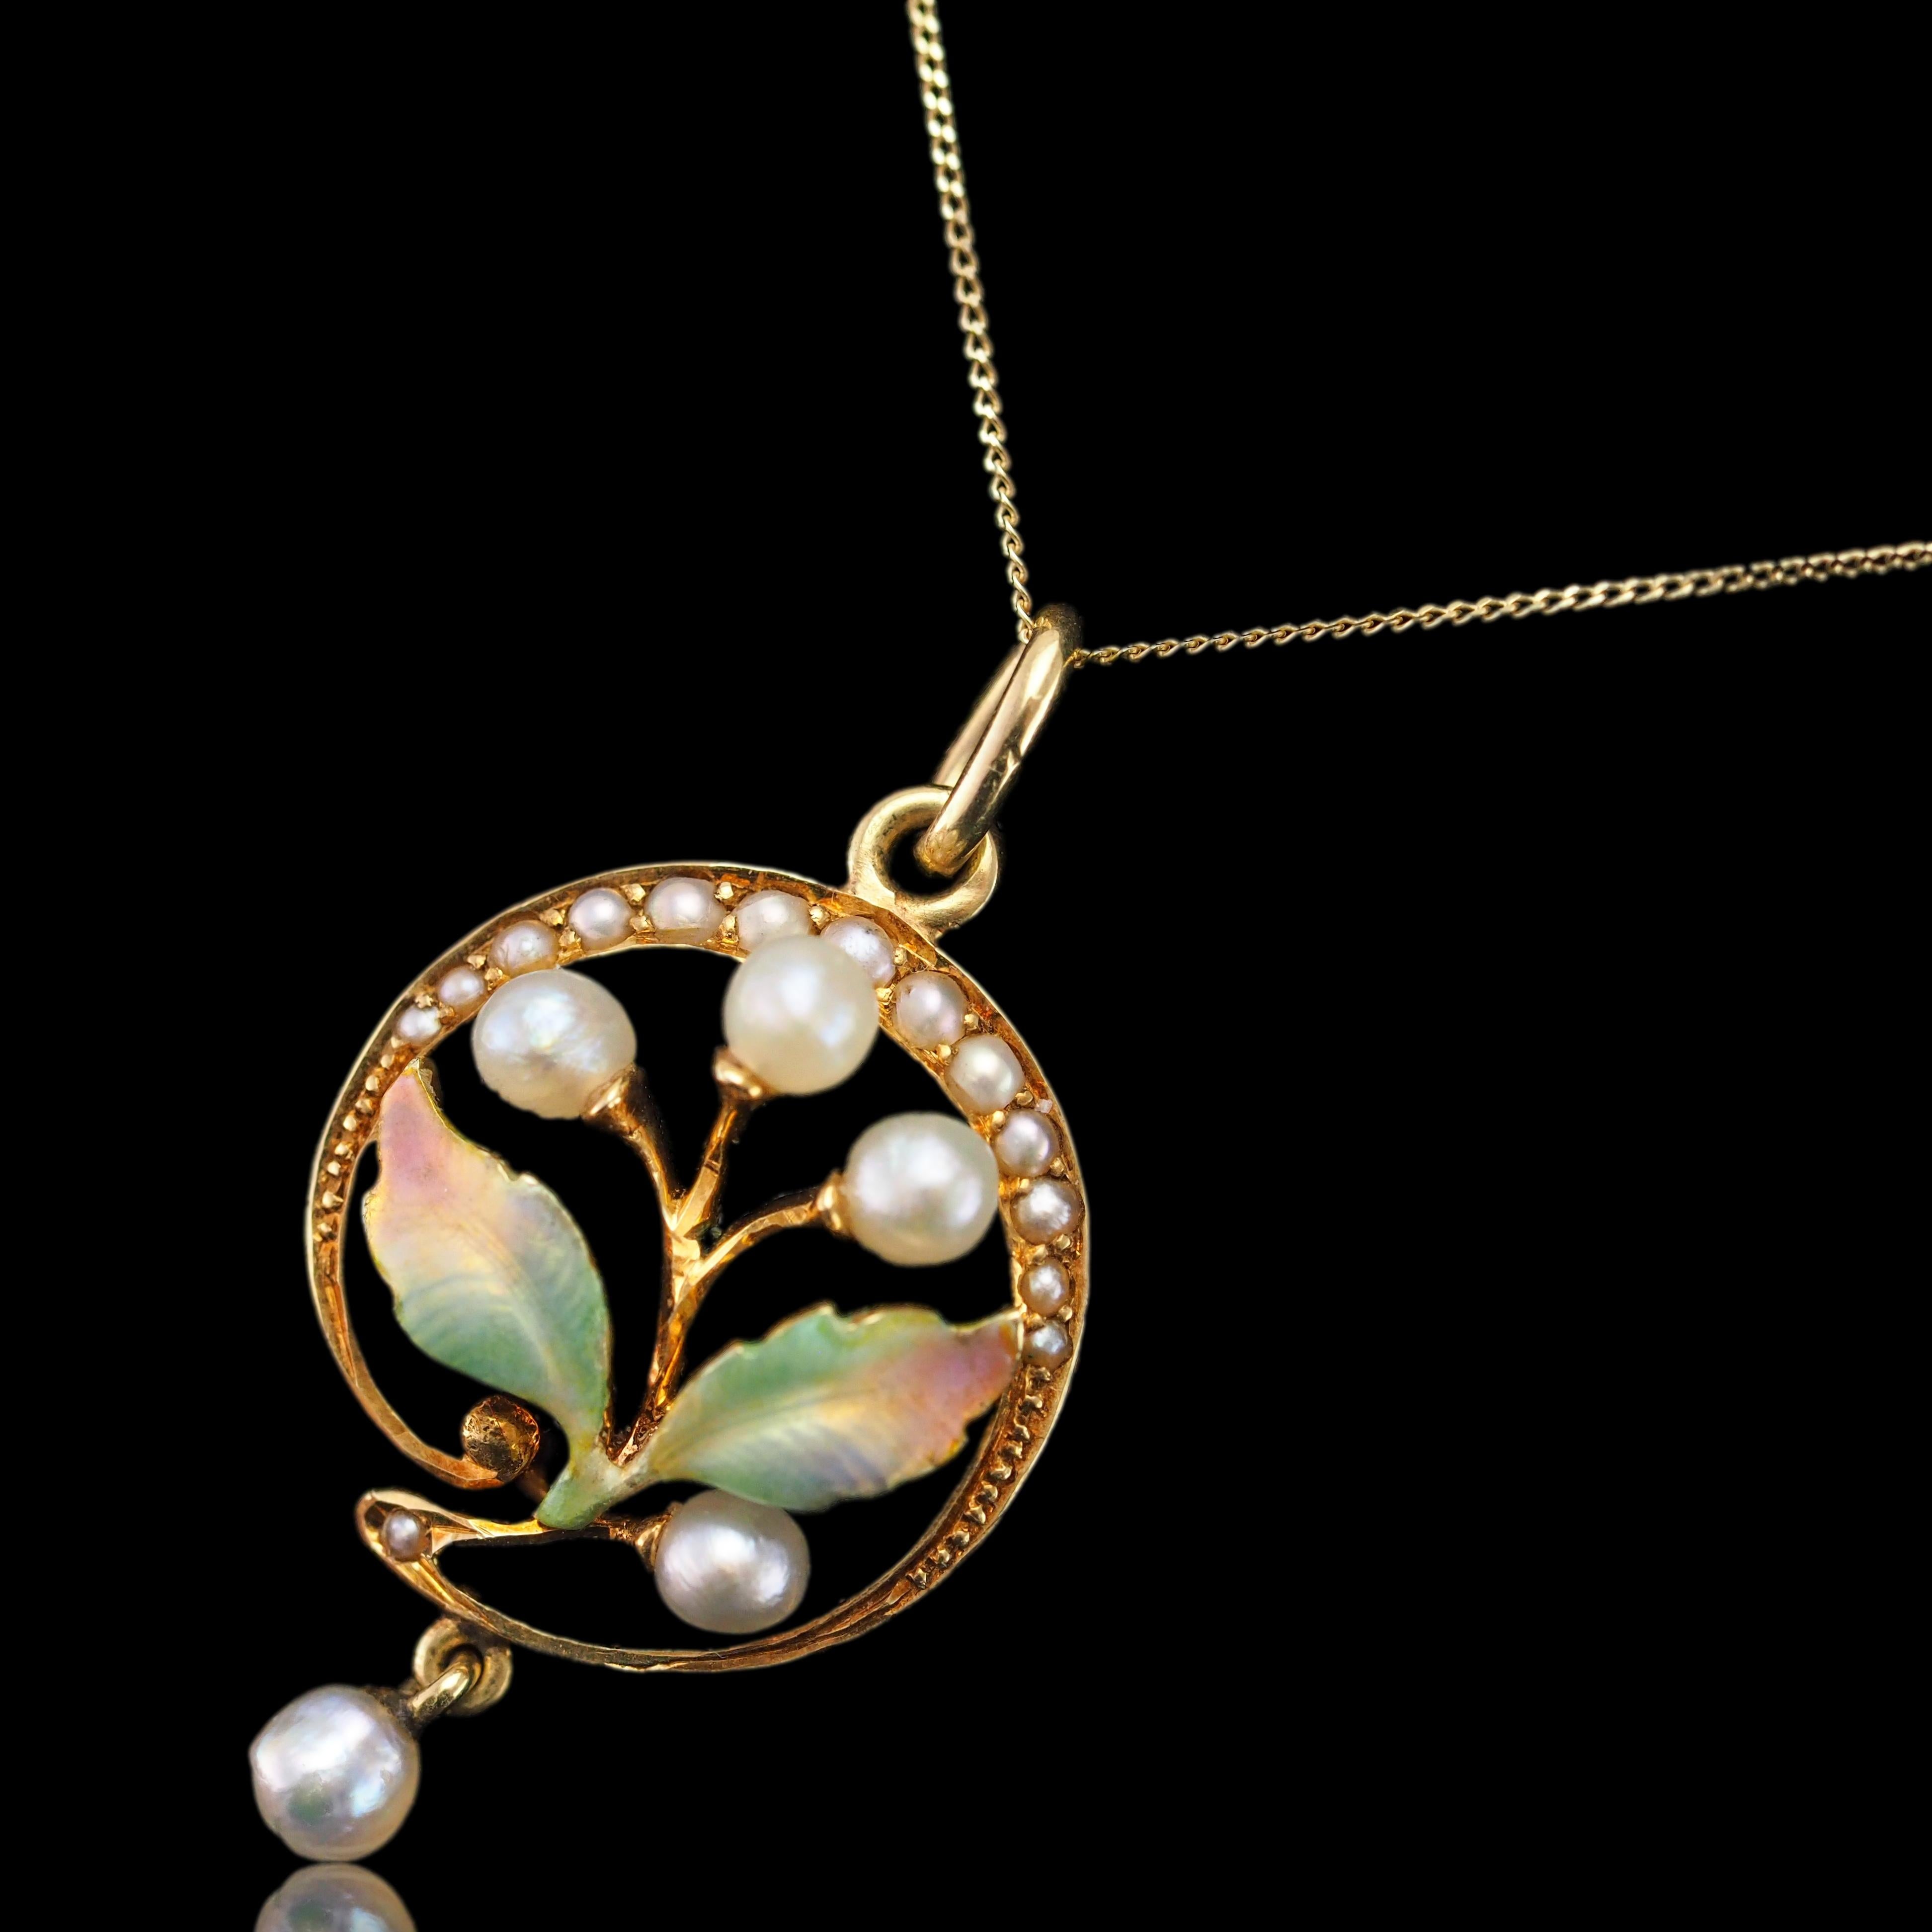 Antique Edwardian Pearl & Enamel Pendant Necklace 15K Gold Art Nouveau c.1910 For Sale 7